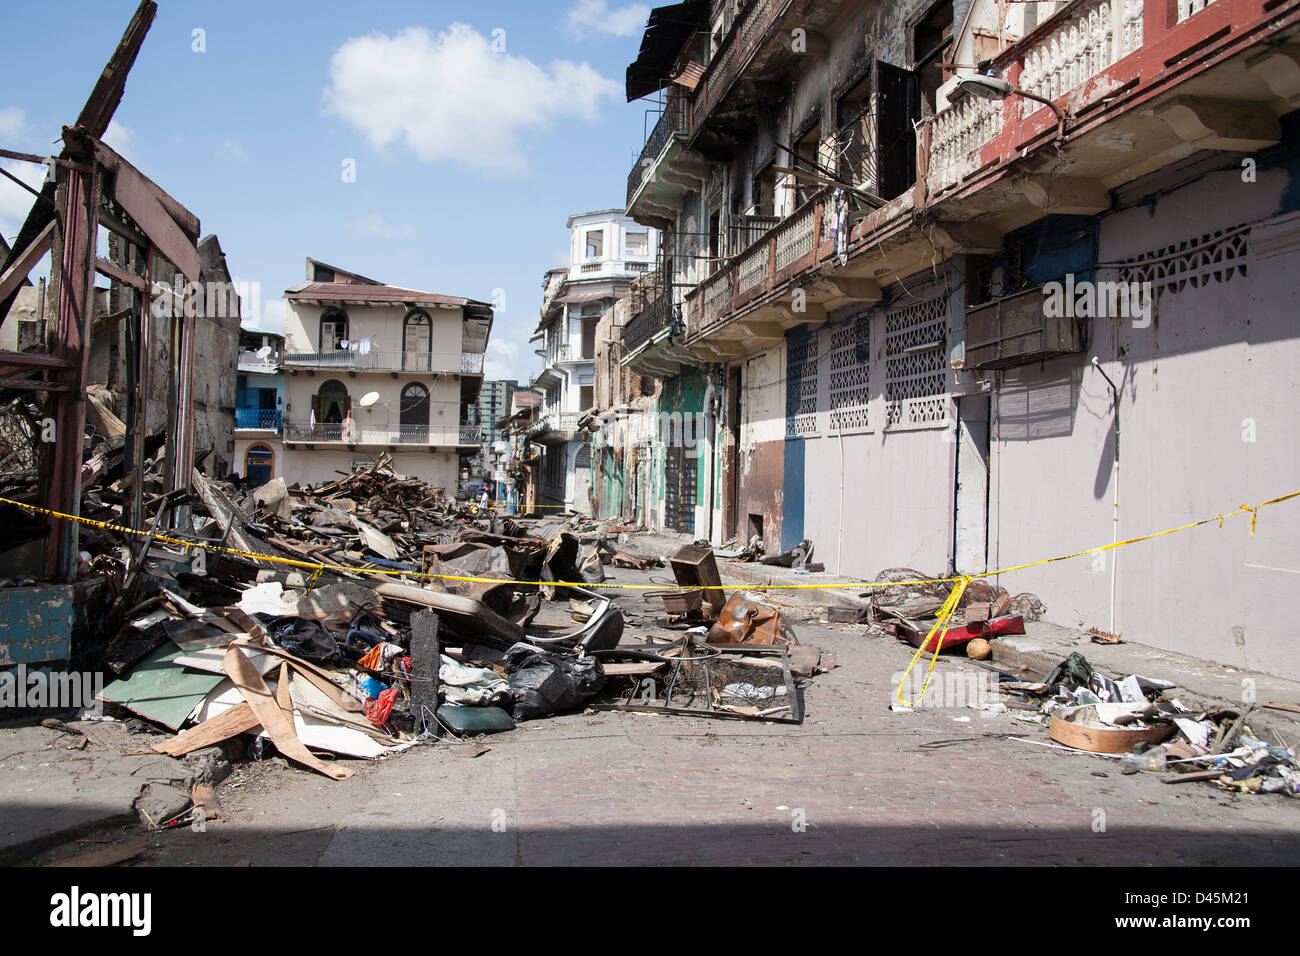 Bauschutt in einer Gasse in der Nähe von heruntergekommenen Gebäuden im Casco Viejo Viertel von Panama-Stadt. Stockfoto